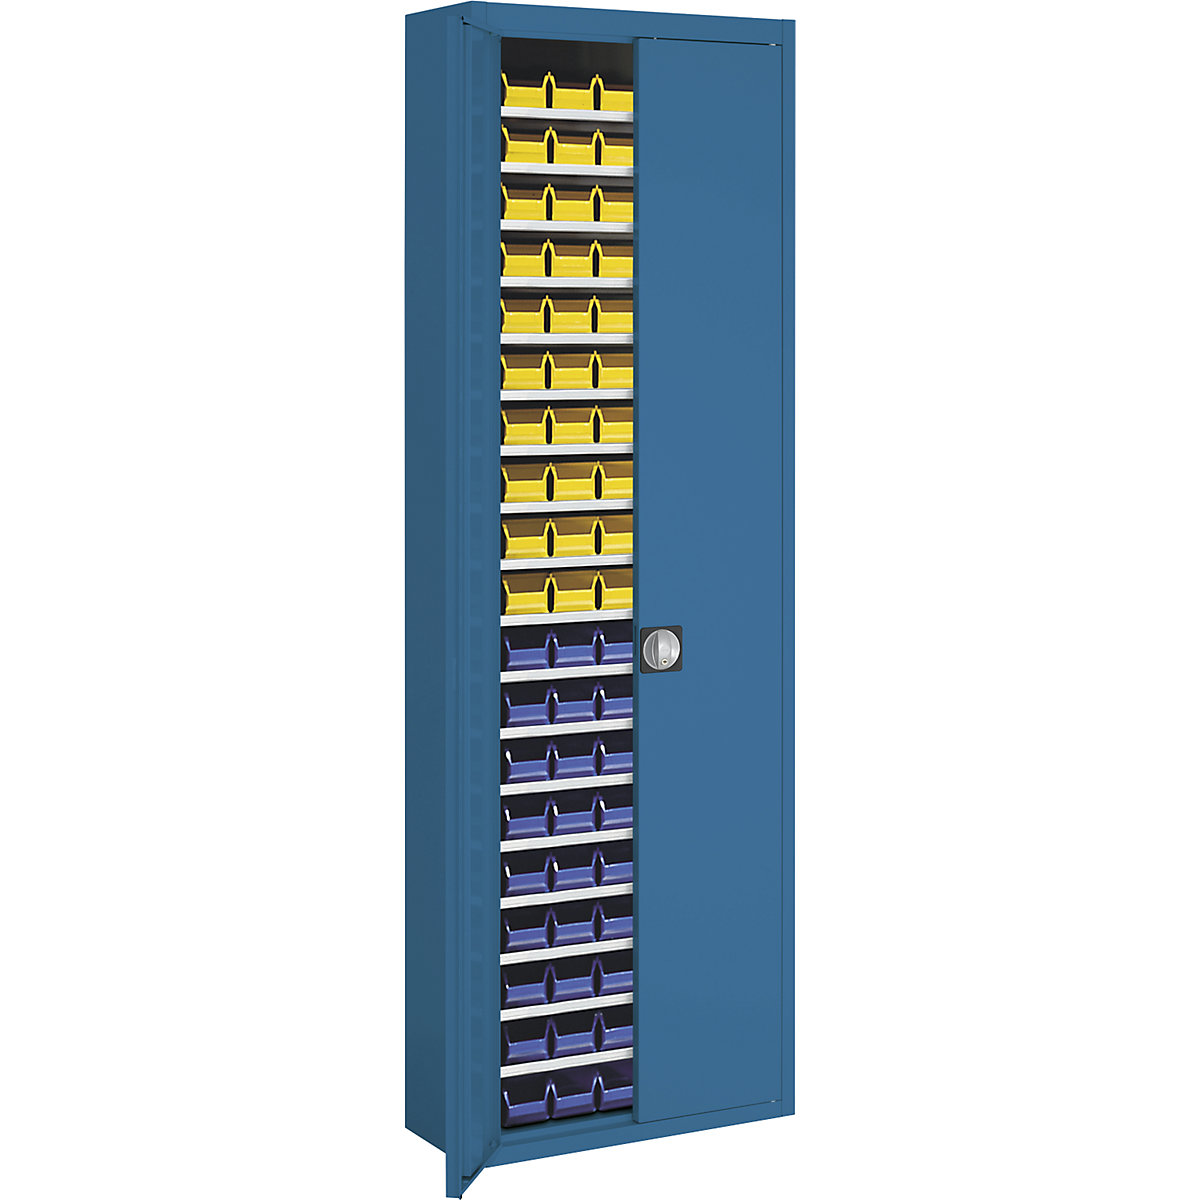 Magazinschrank mit Sichtlagerkästen mauser, HxBxT 2150 x 680 x 280 mm, einfarbig, blau, 114 Kästen-1